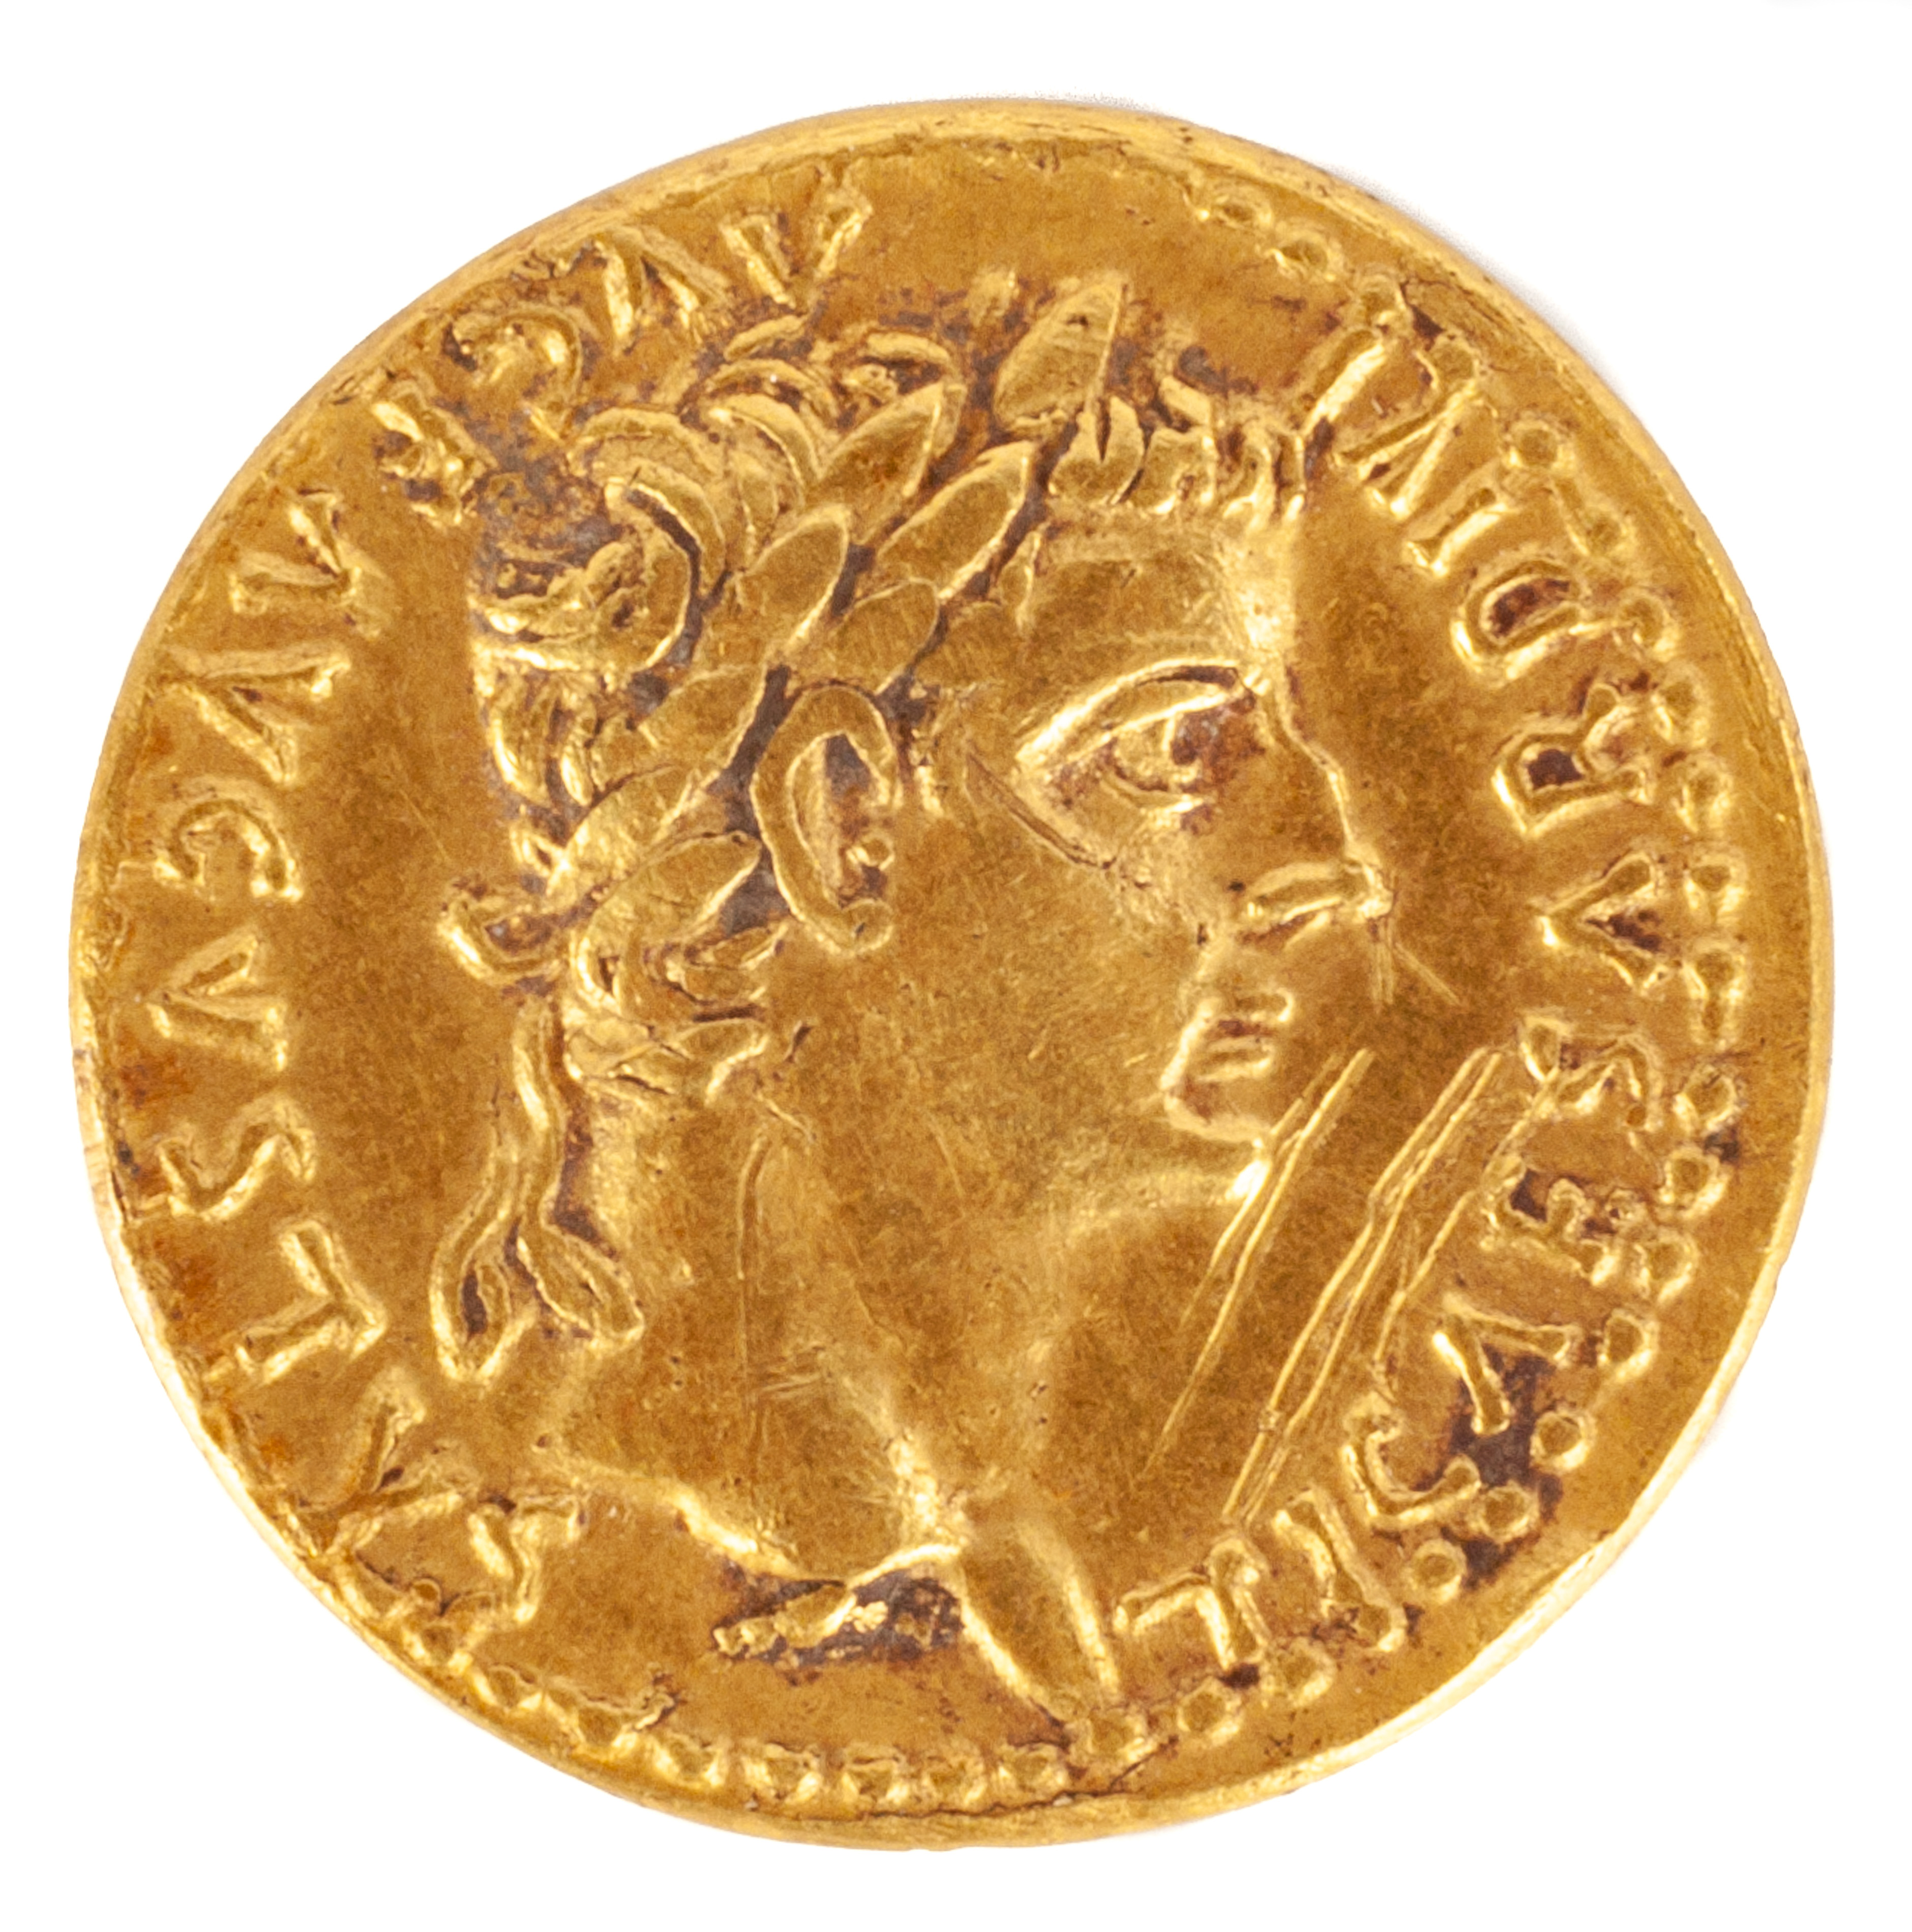 AUREUS OF TIBERIUS, (14-37AD) gold